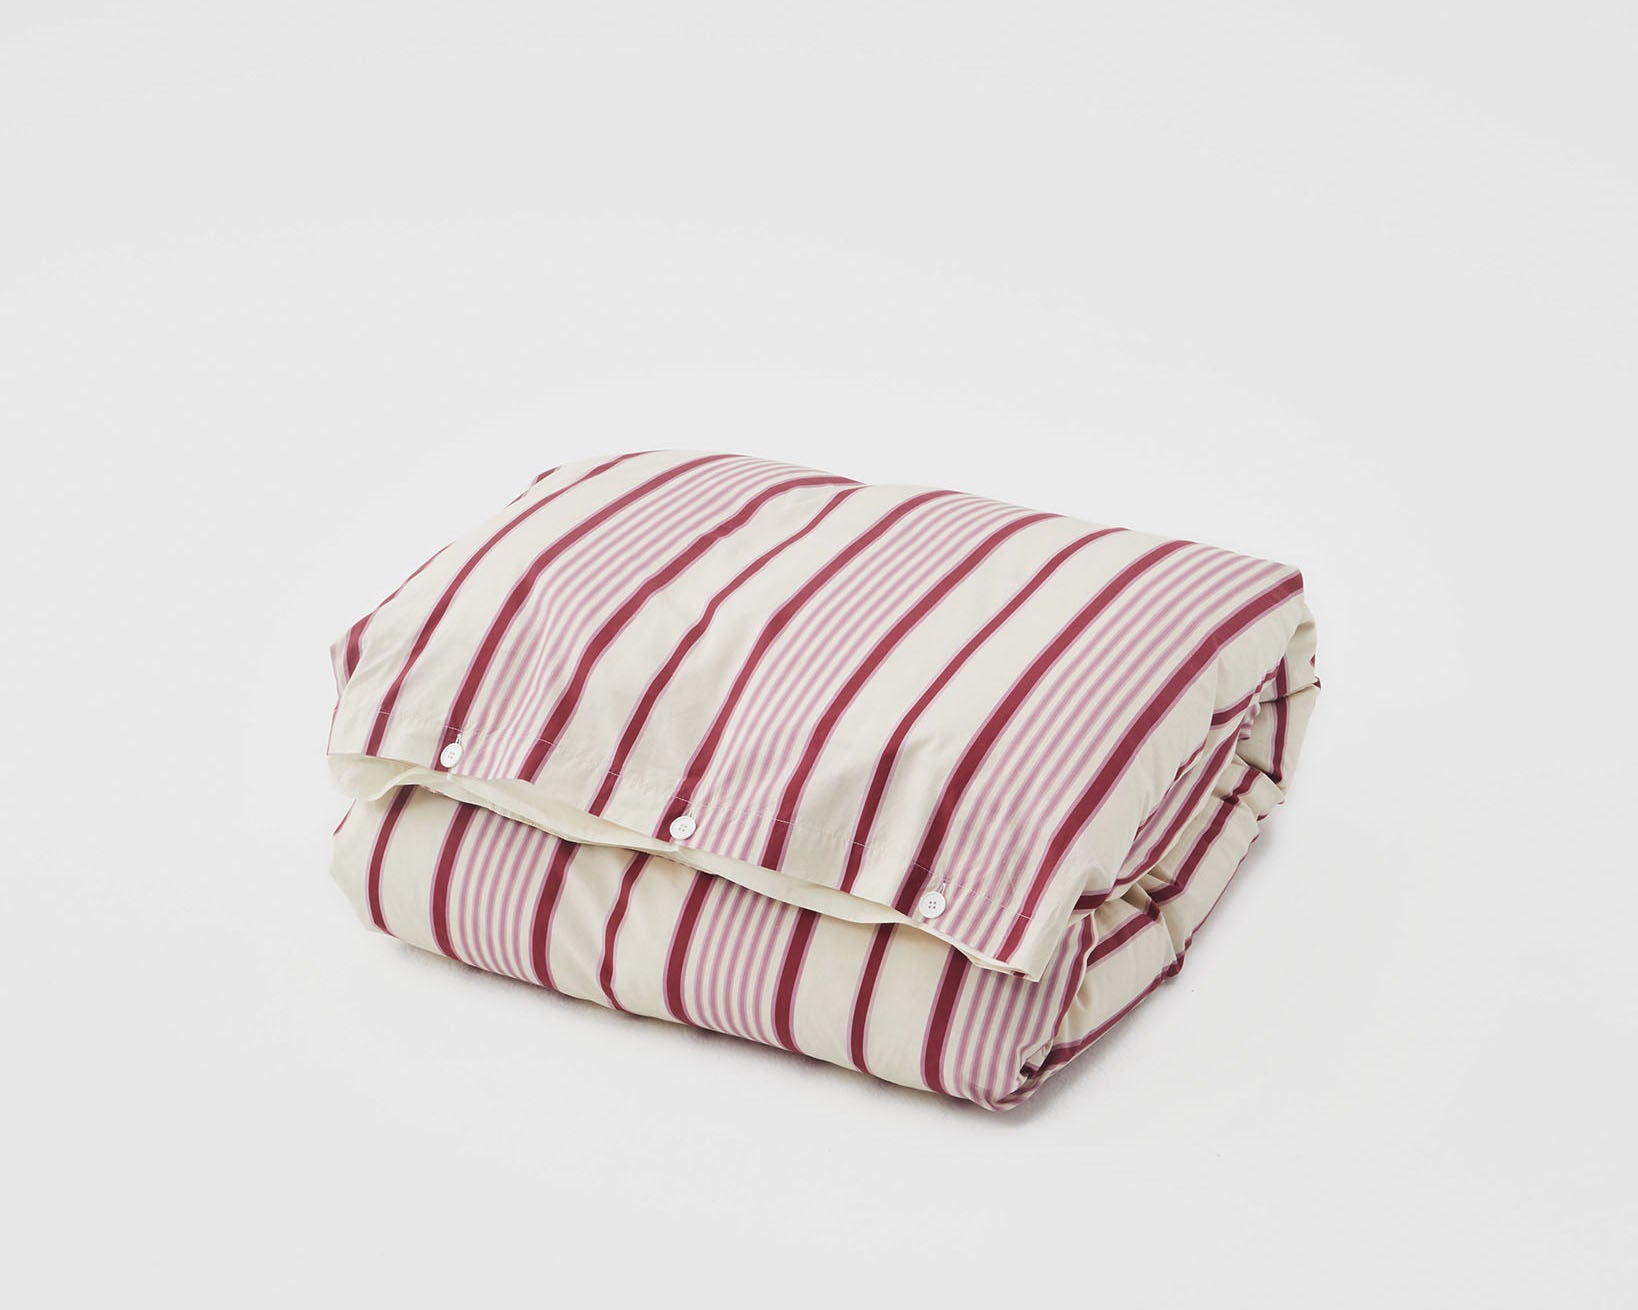 Tekla Cotton Percale Bedding - Pink Mattress Stripes